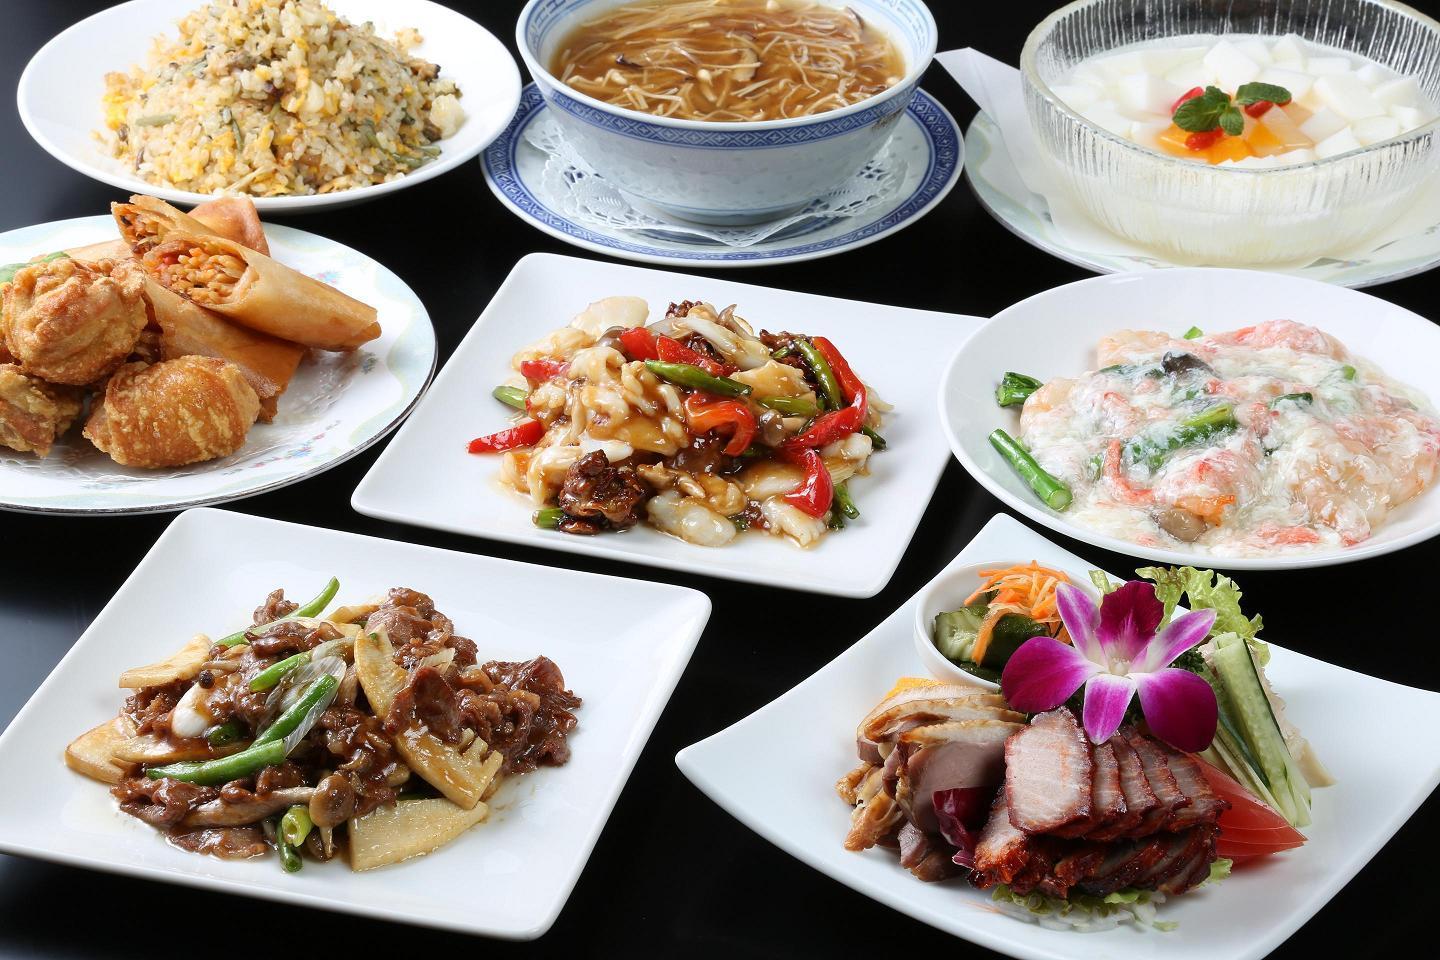 中国料理龍鱗の中華料理がずらりと並んだ写真